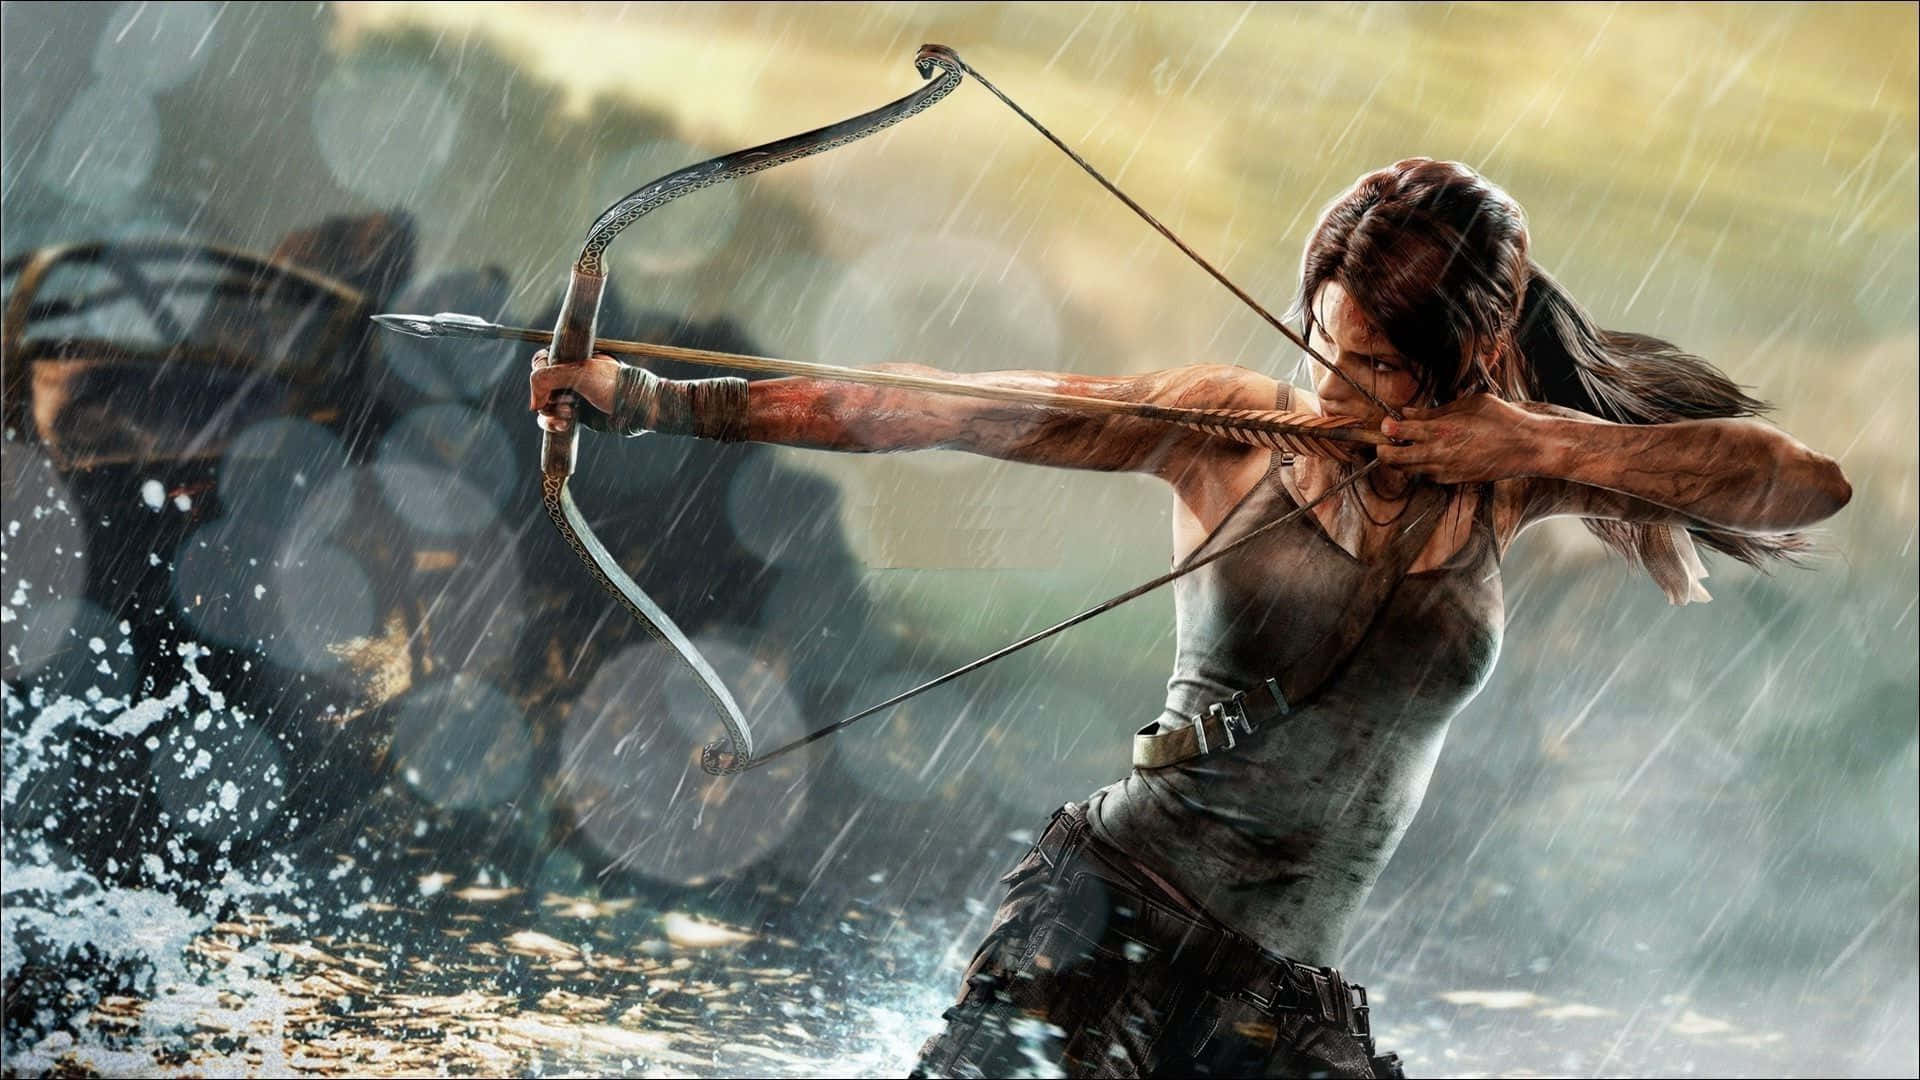 Einefrau Zielt Mit Einem Bogen Im Regen.